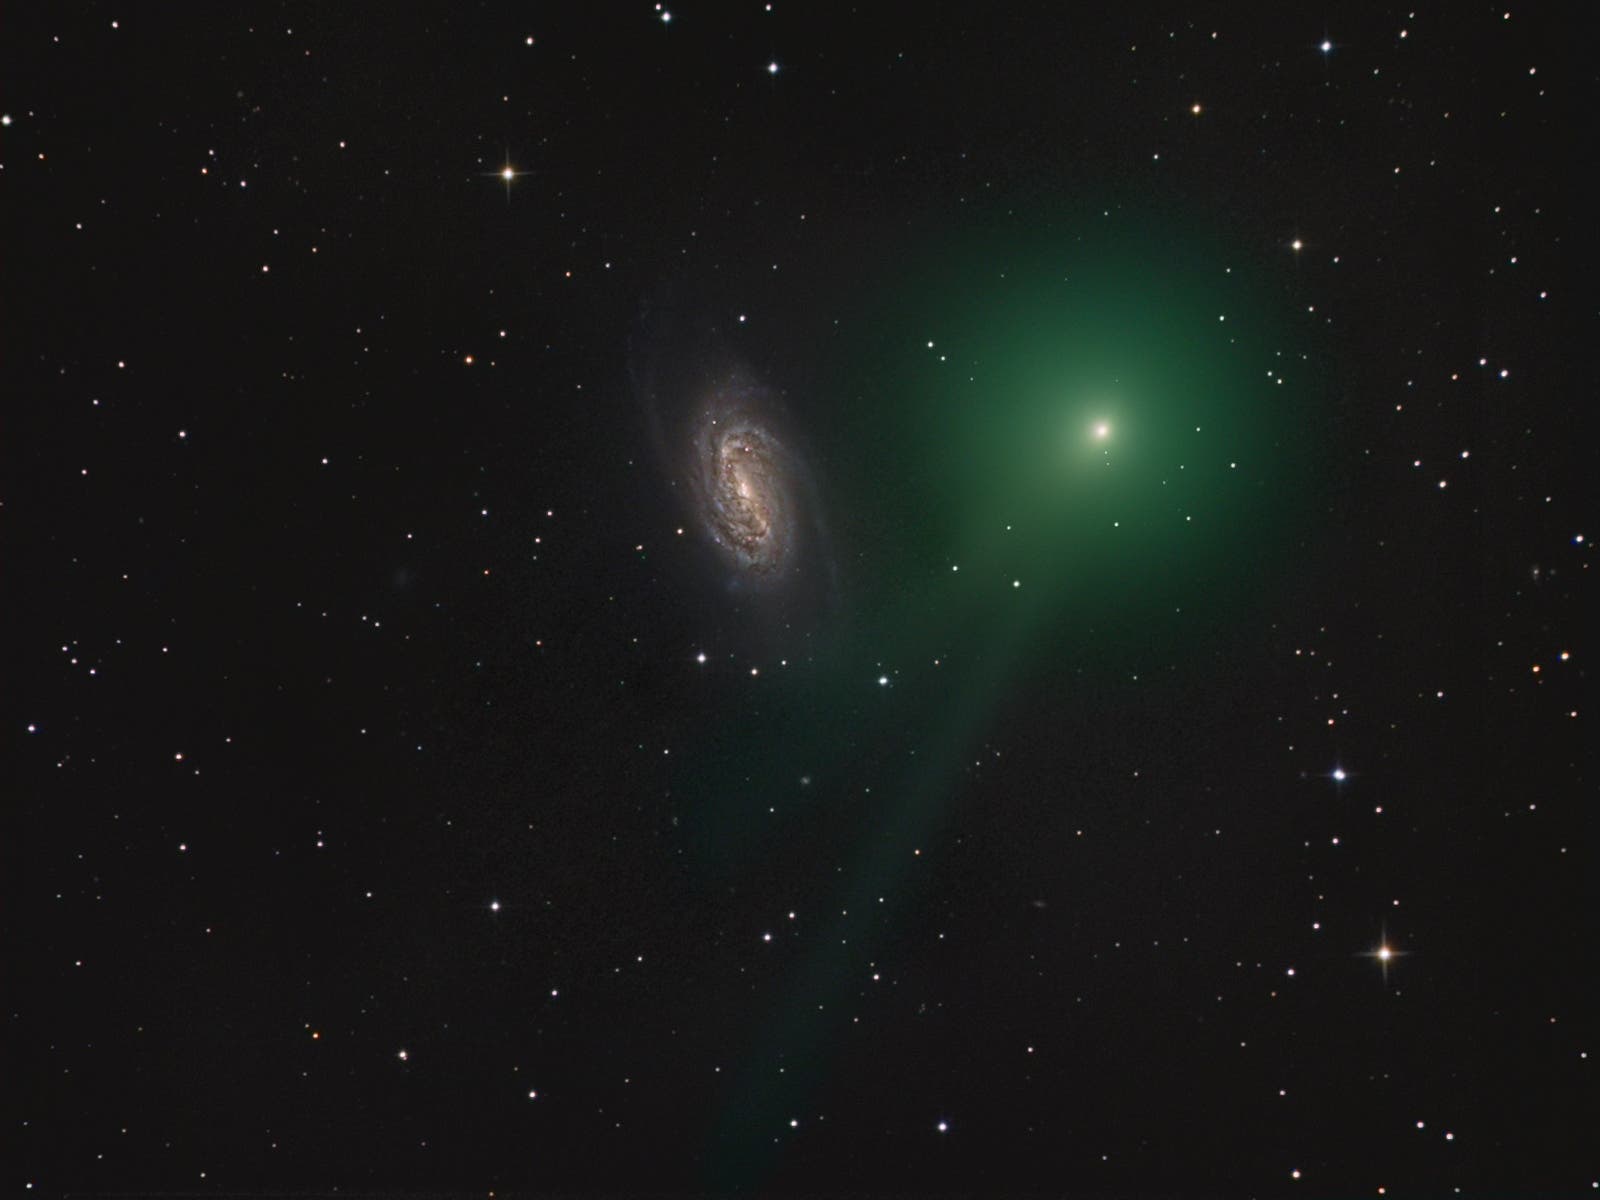 Komet C/2018 Y1 (Iwamoto) bei NGC 2903